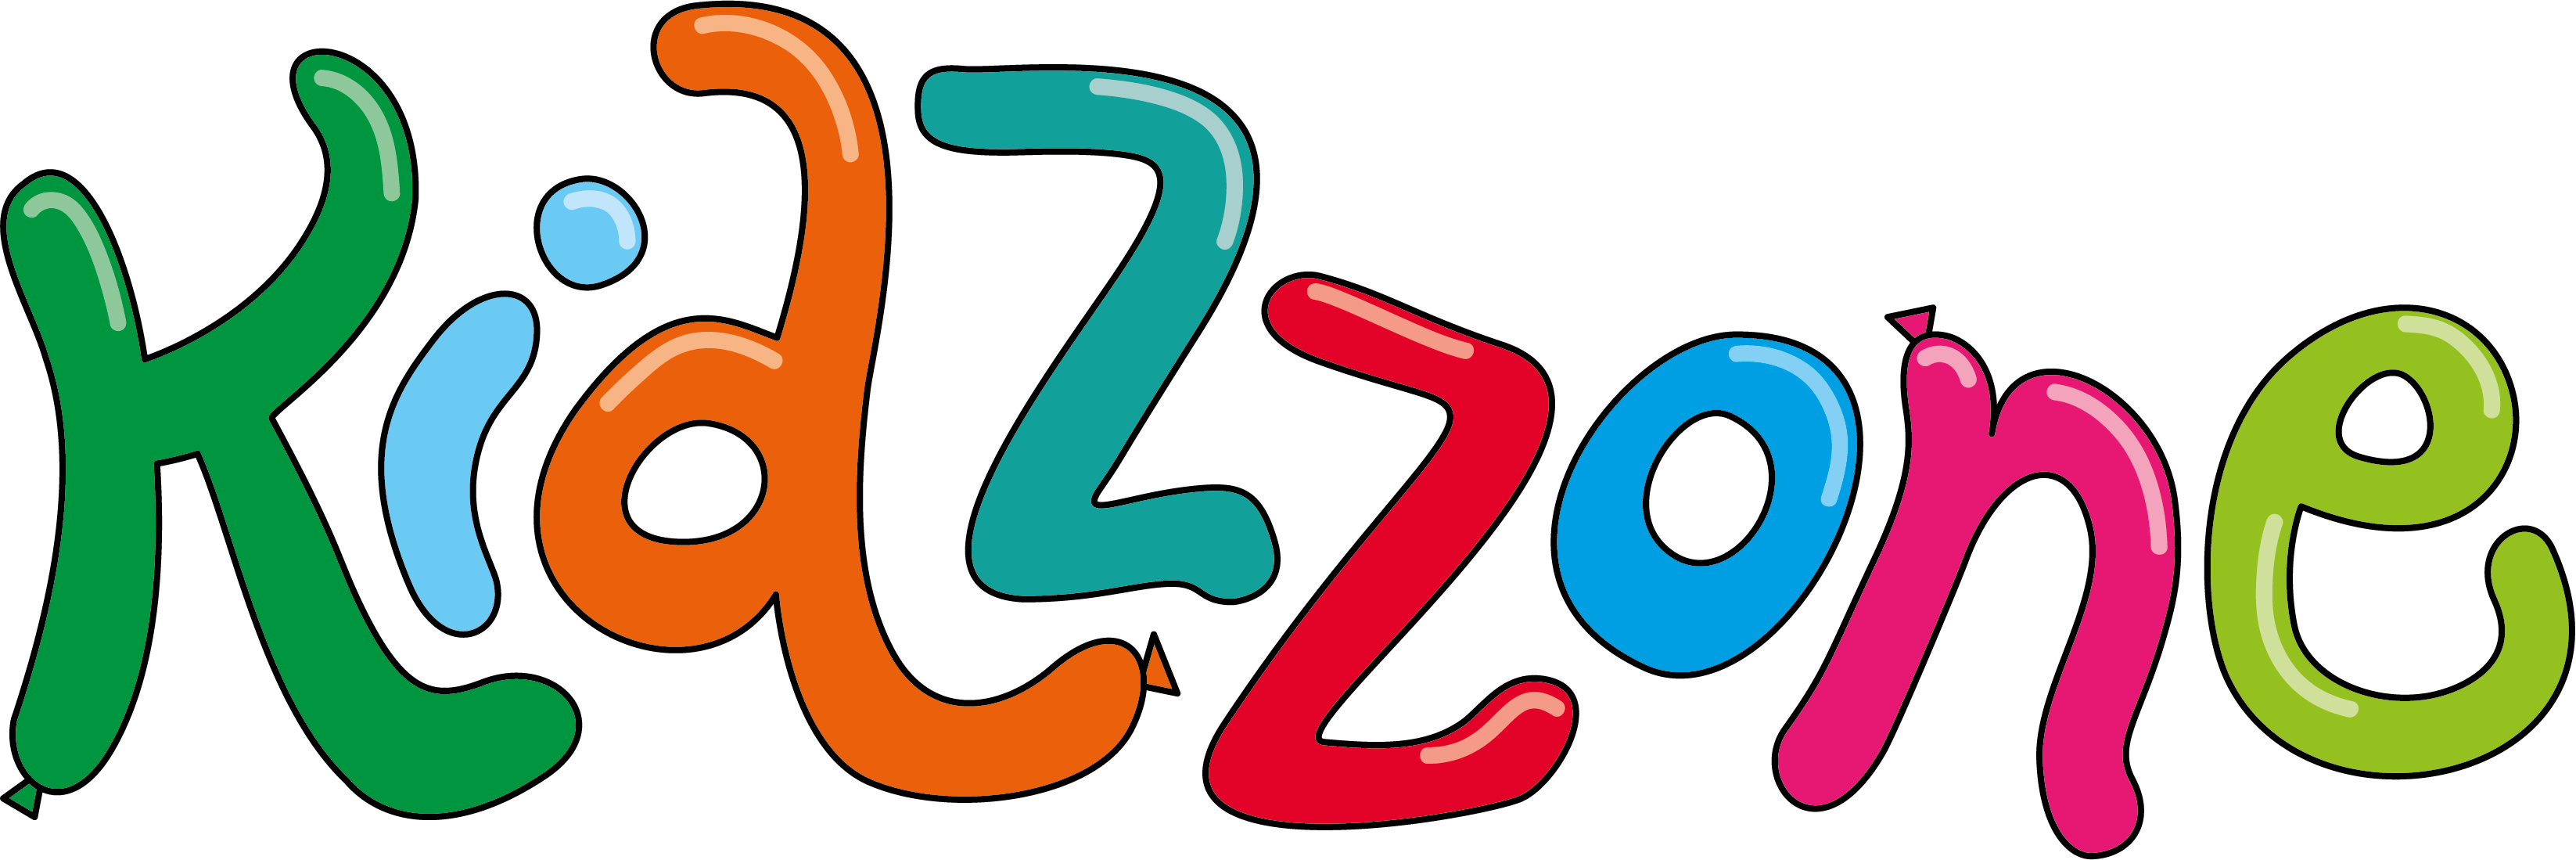 Kidzzone Logo